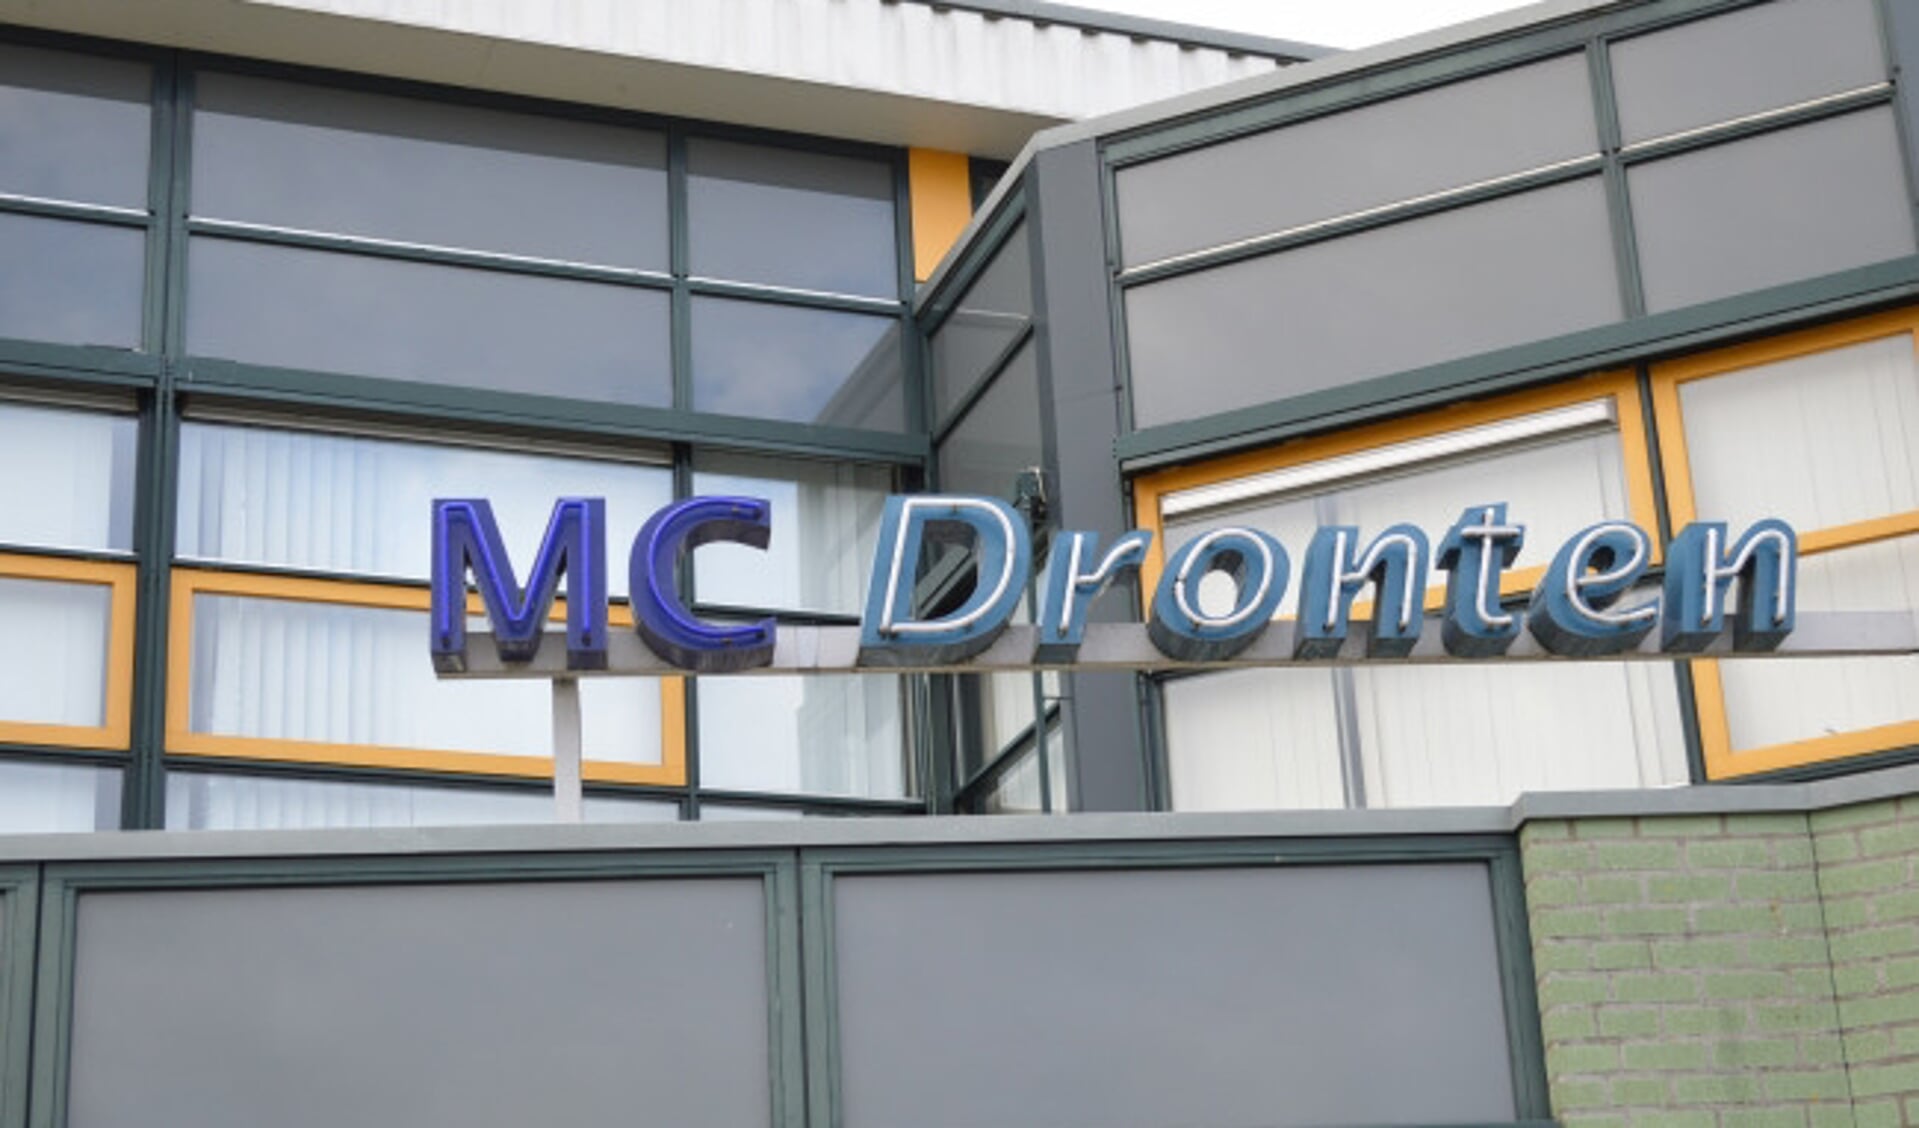  De polikliniek van de MC Groep in Dronten.